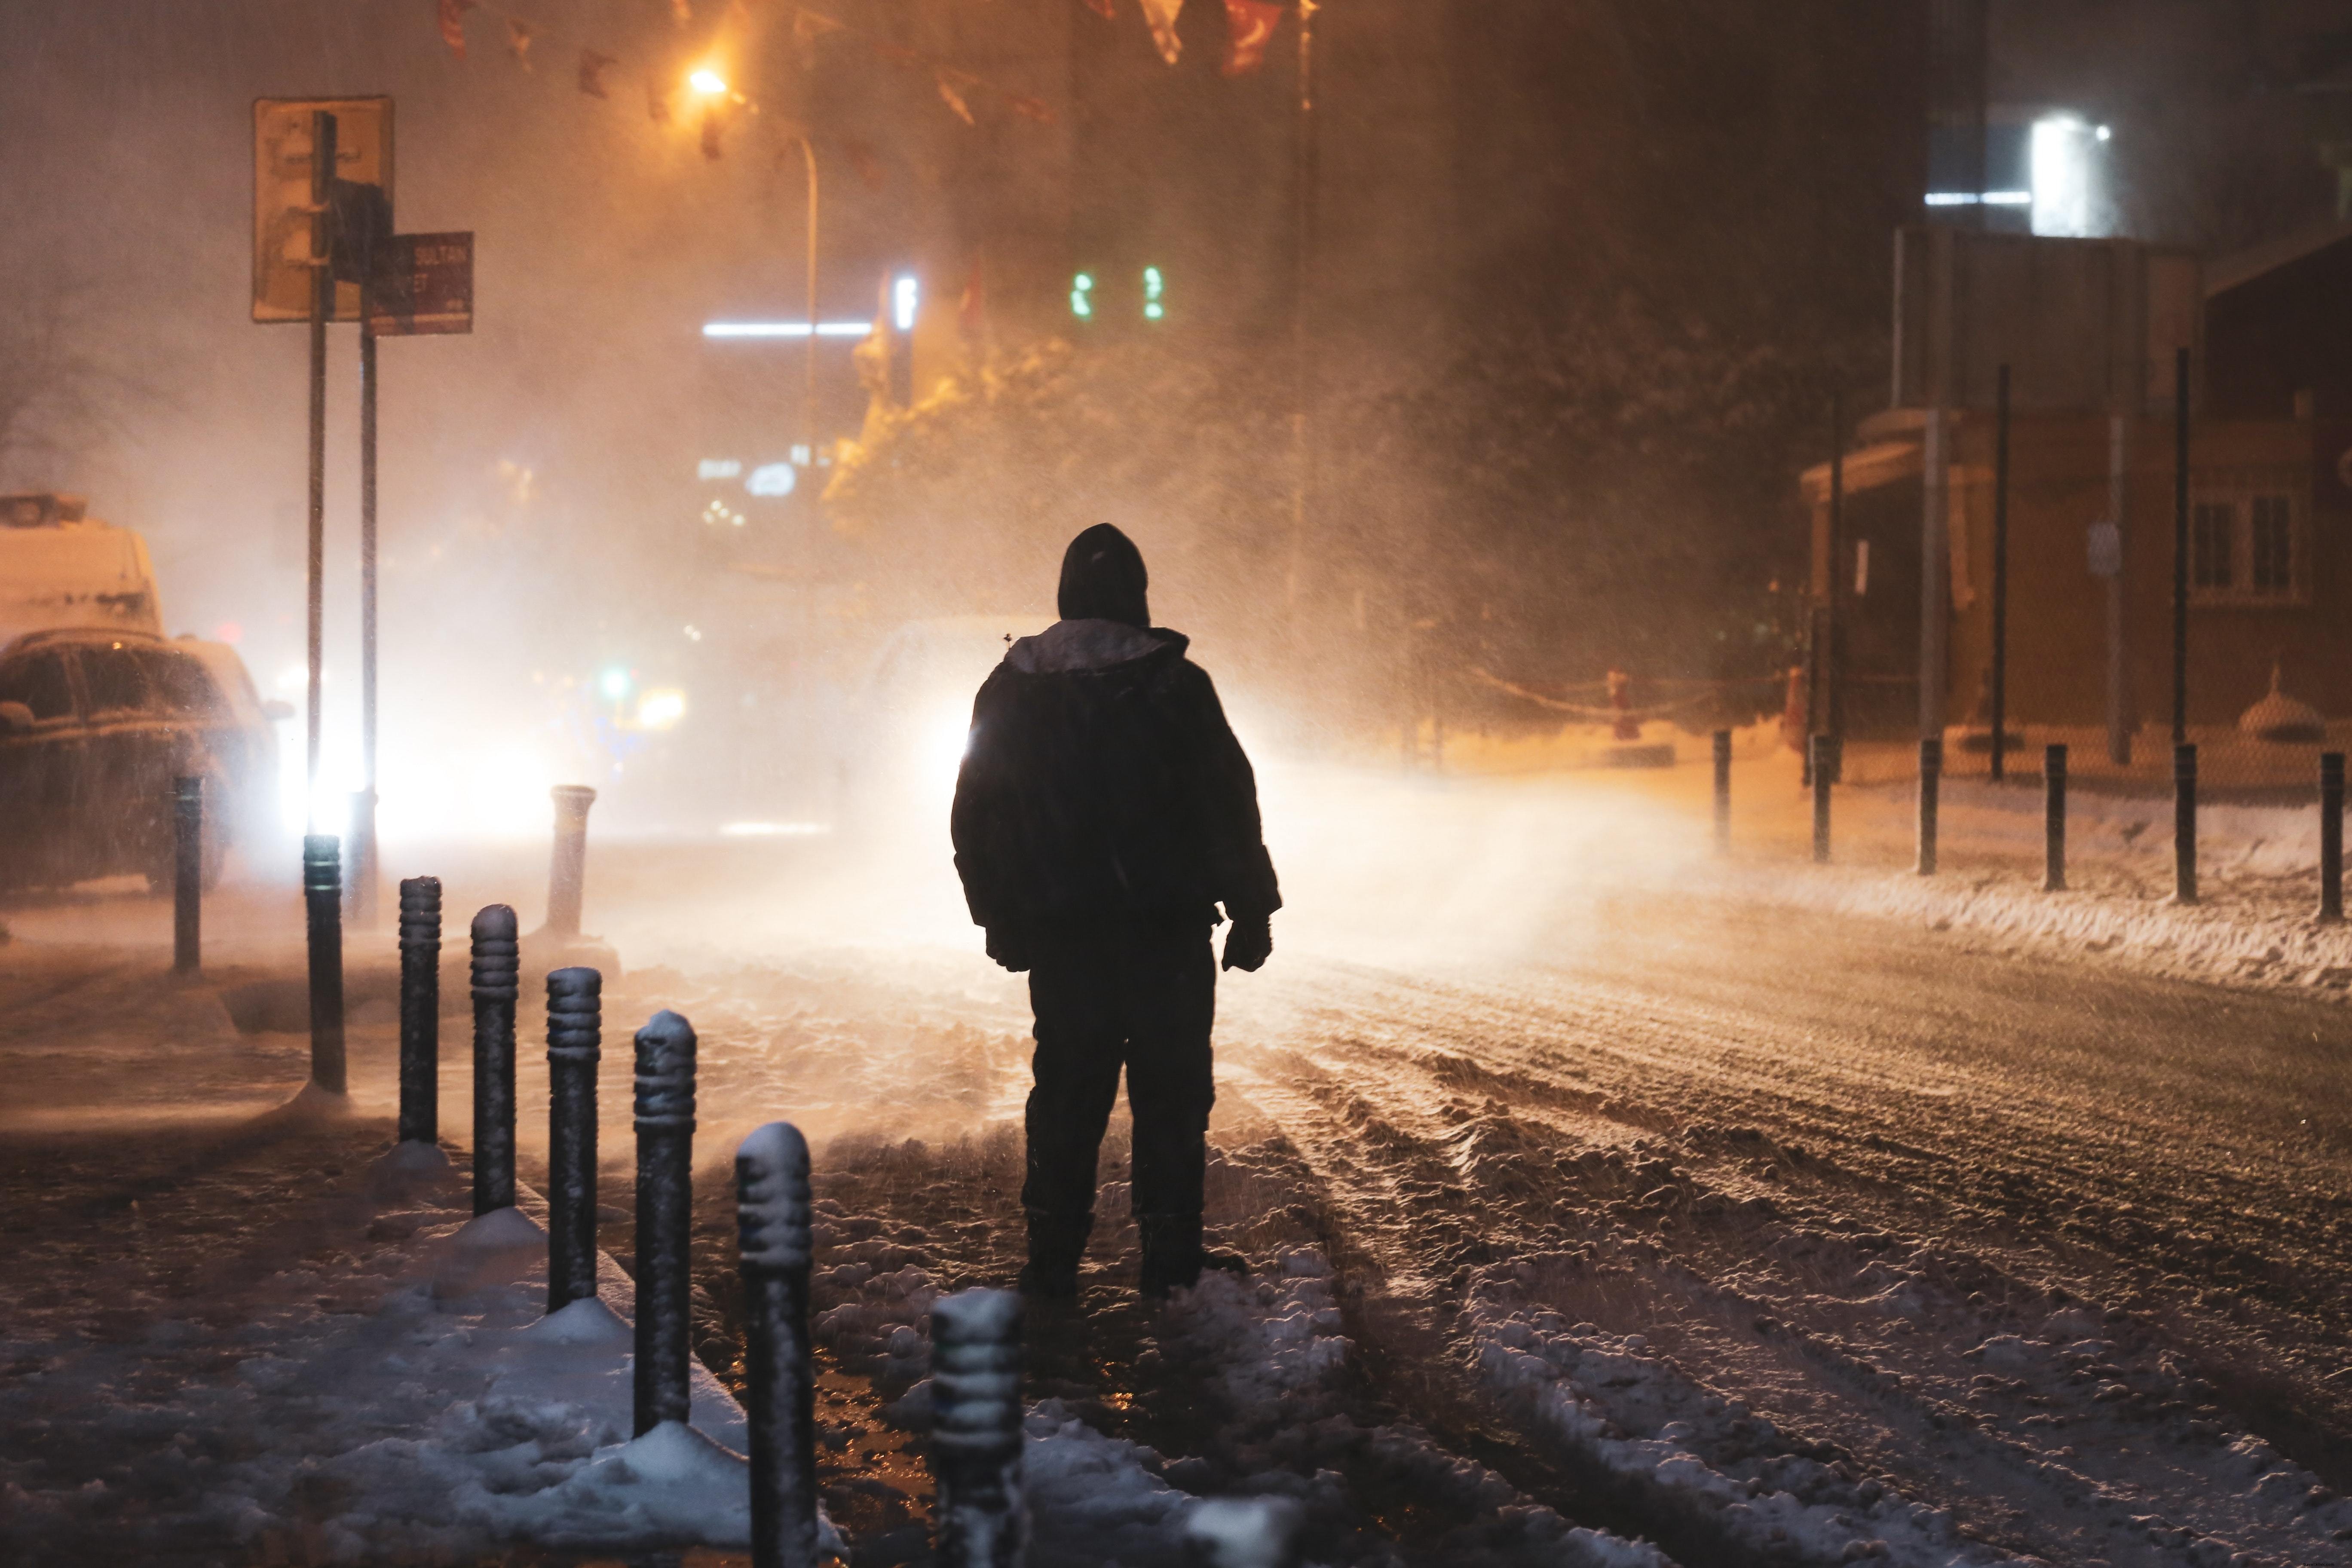 Persona iluminada por las luces de la calle durante una tormenta de nieve Foto 